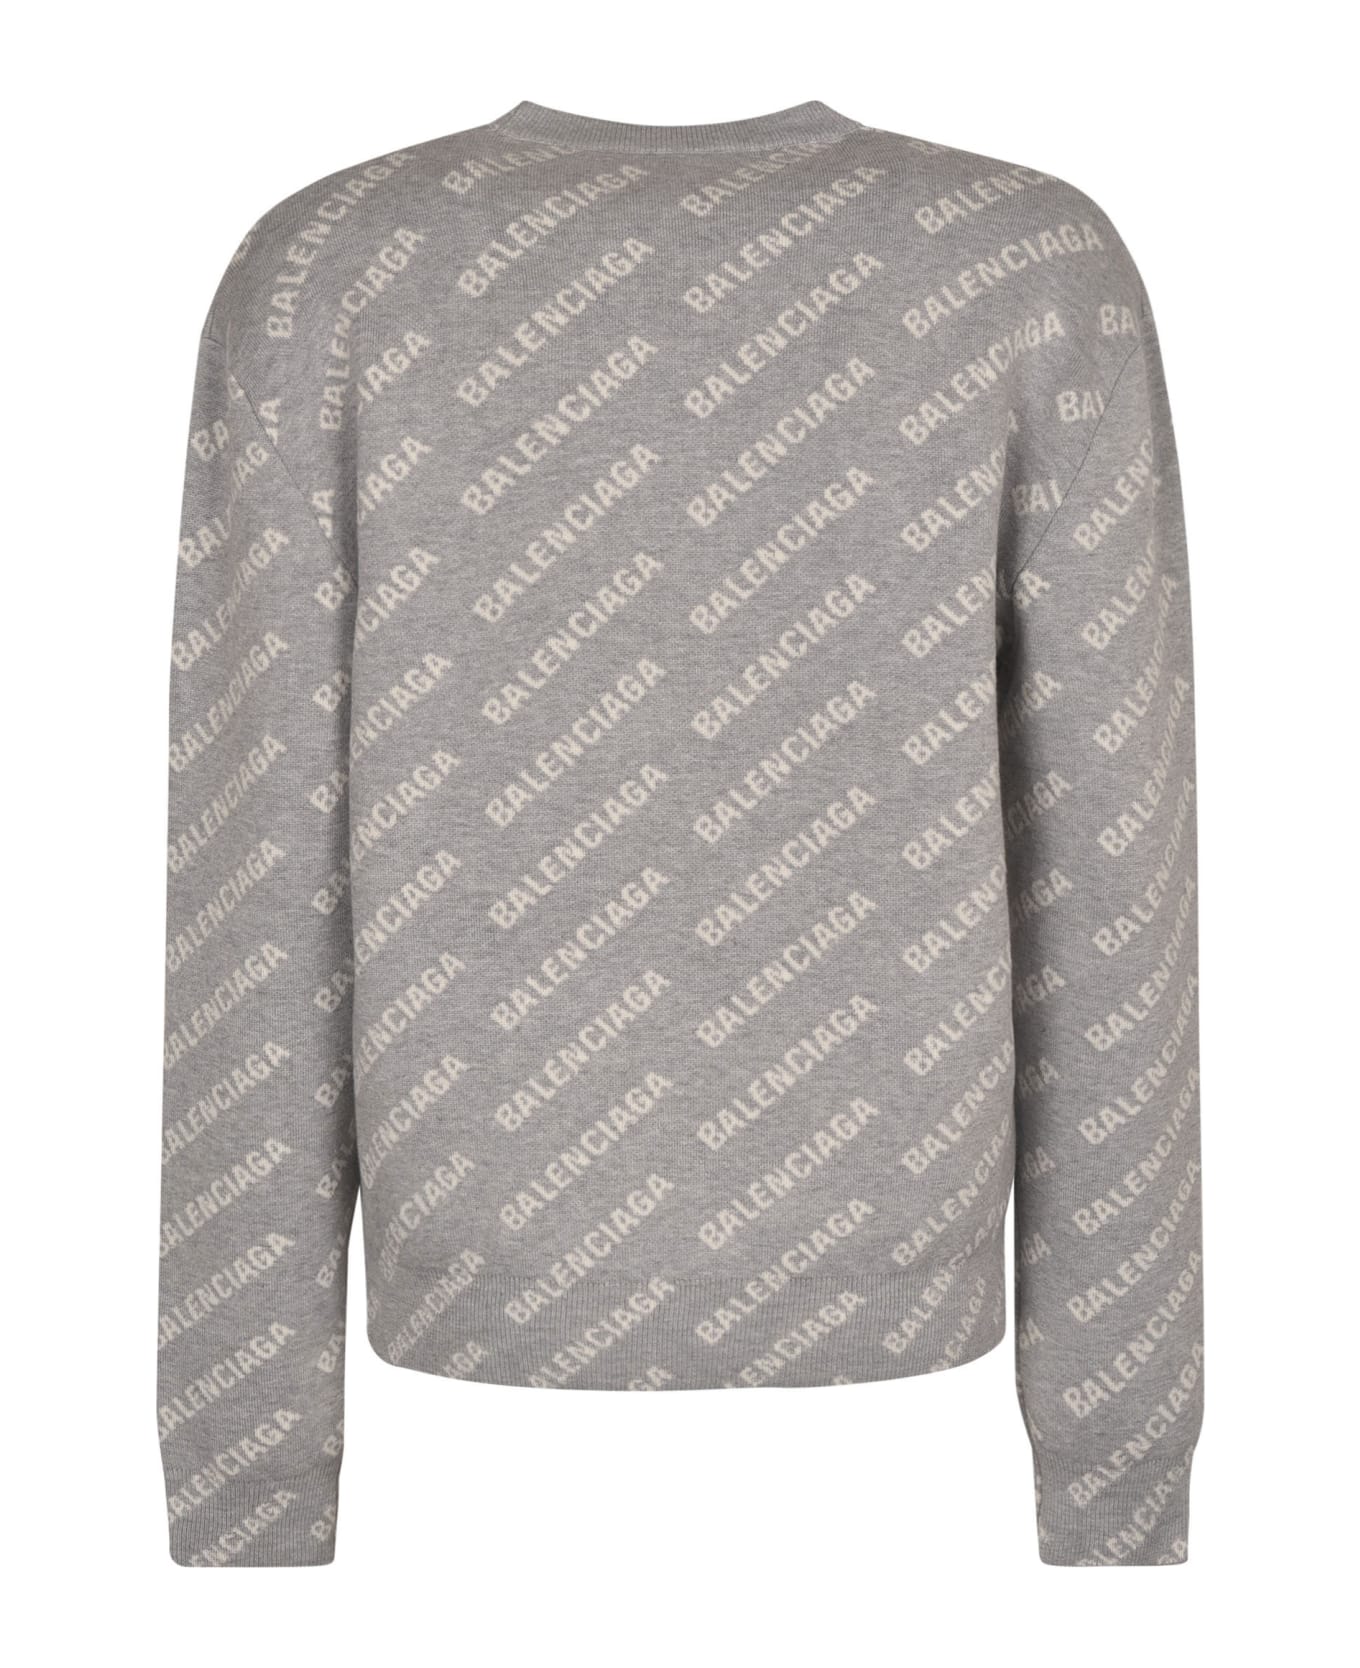 Balenciaga All-over Logo Crewneck Sweater - Grey/White